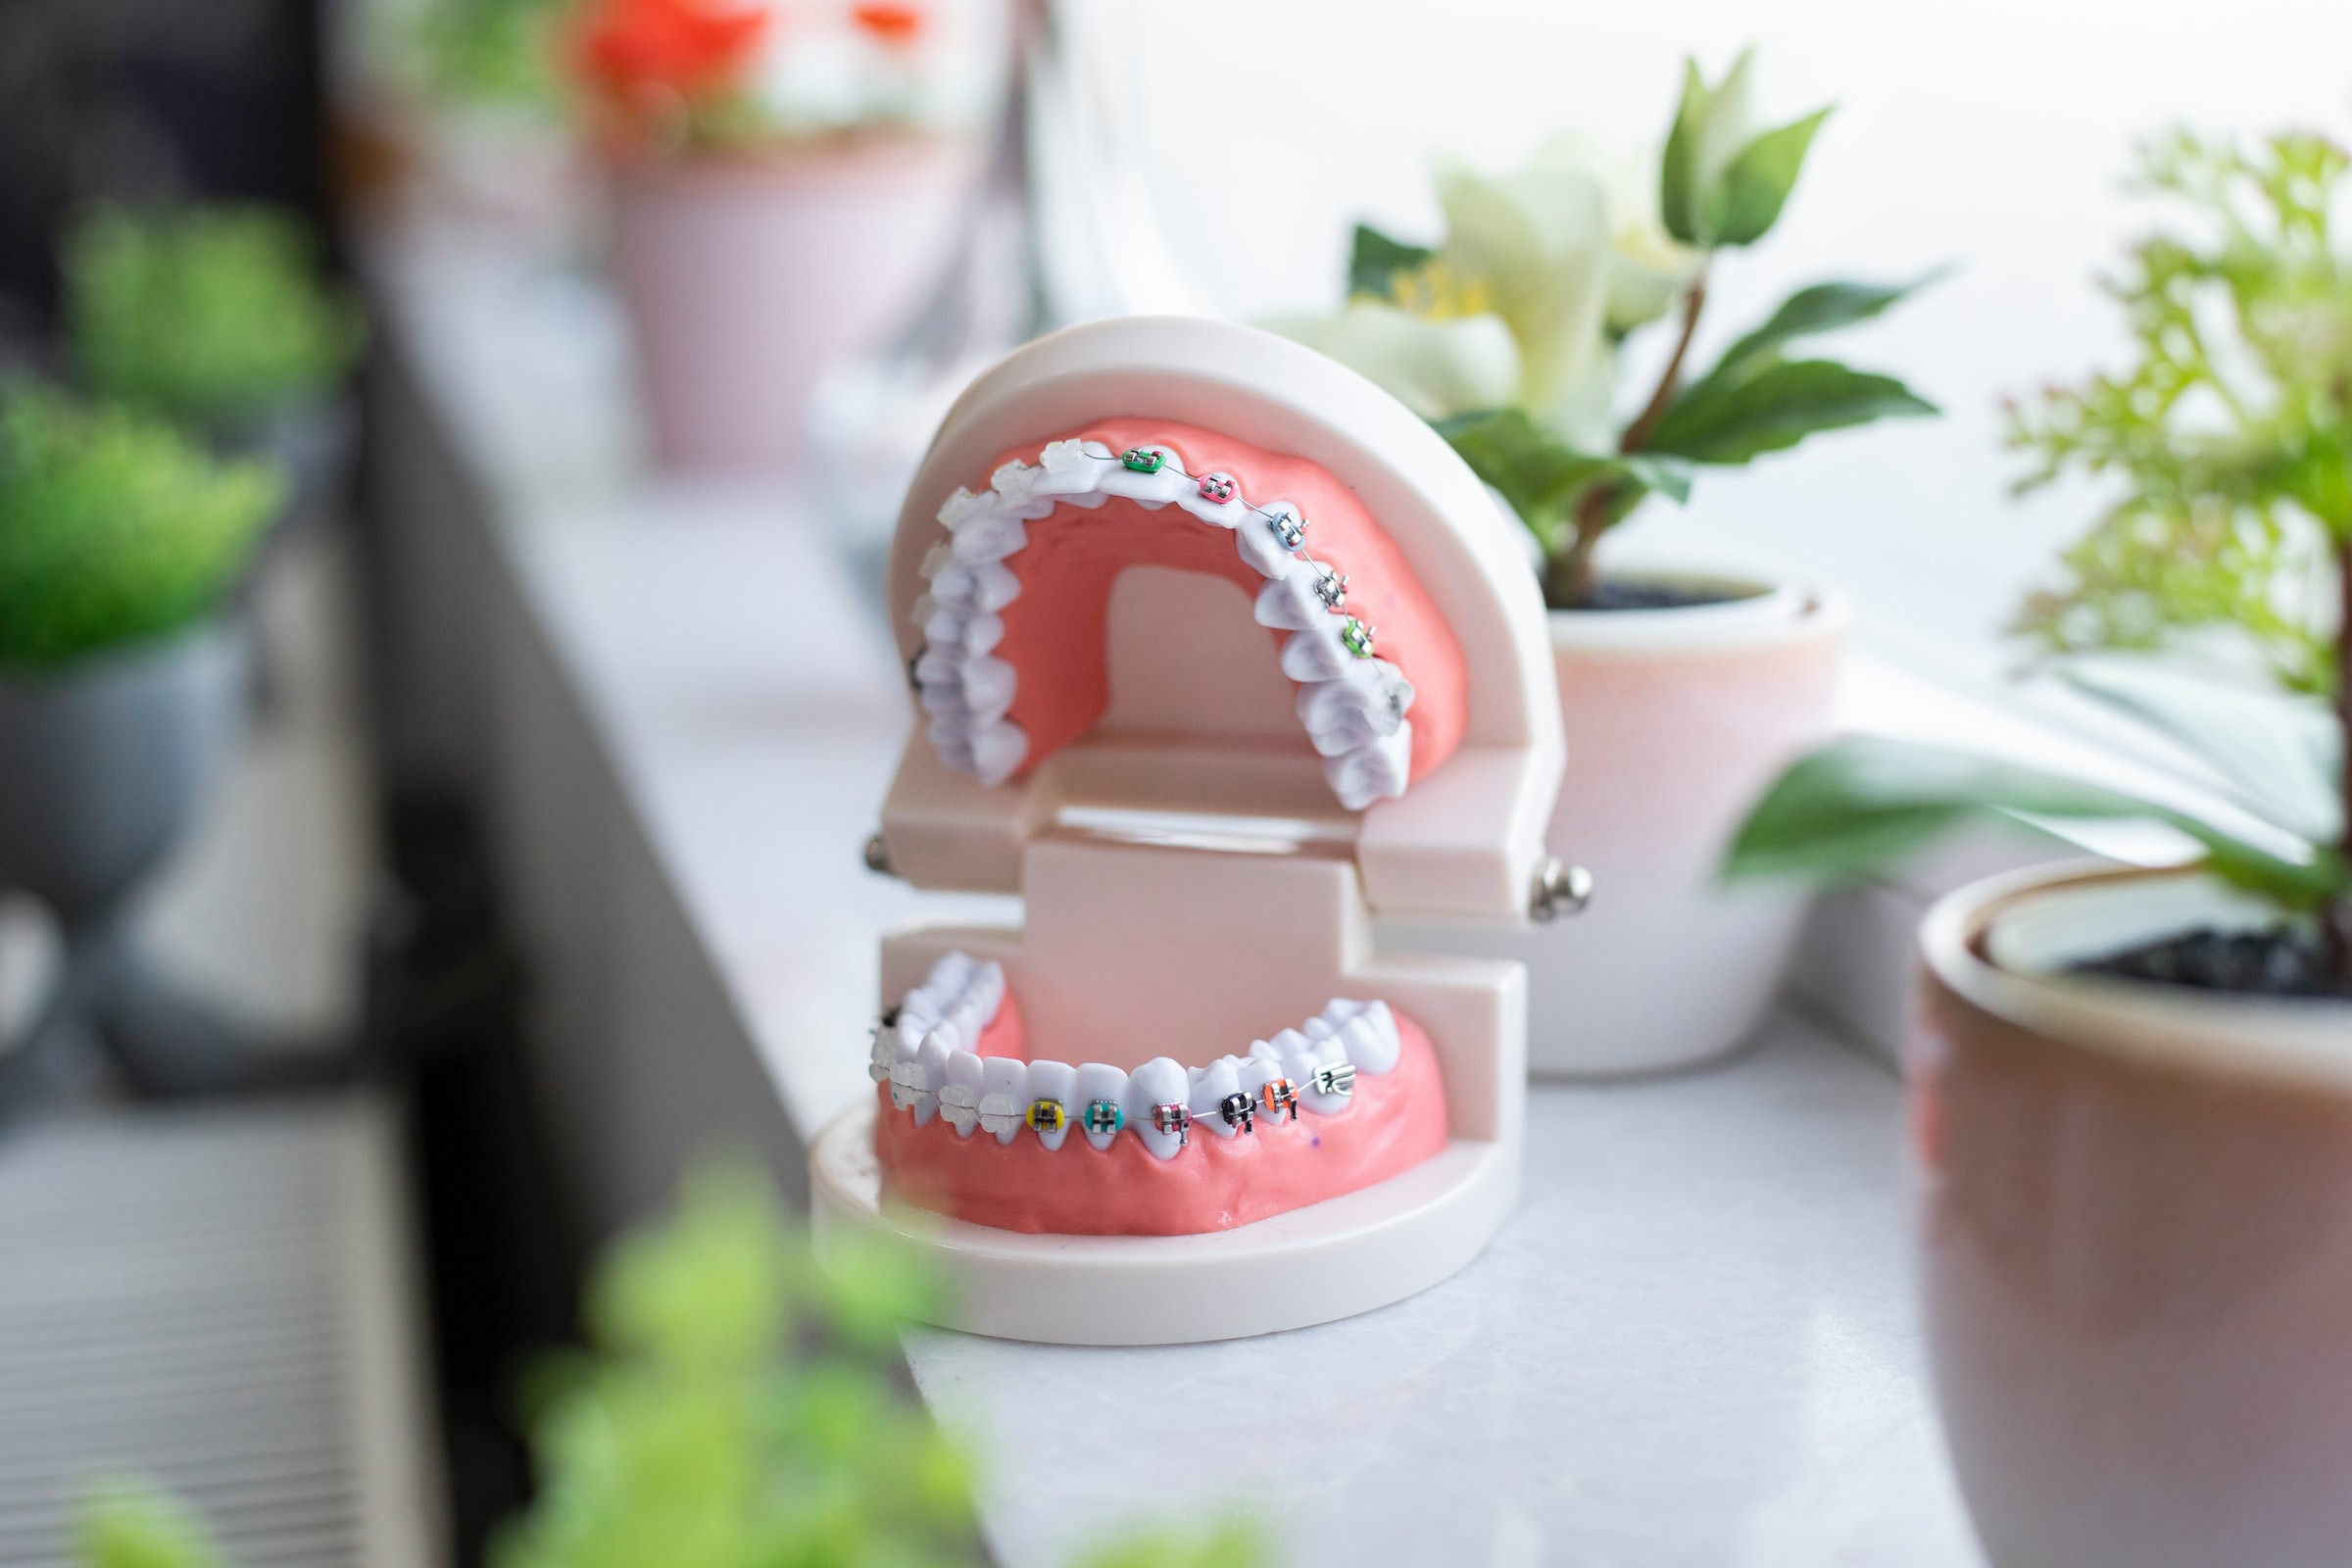 Ortodoncia y salud general: ¿Cómo están relacionados?